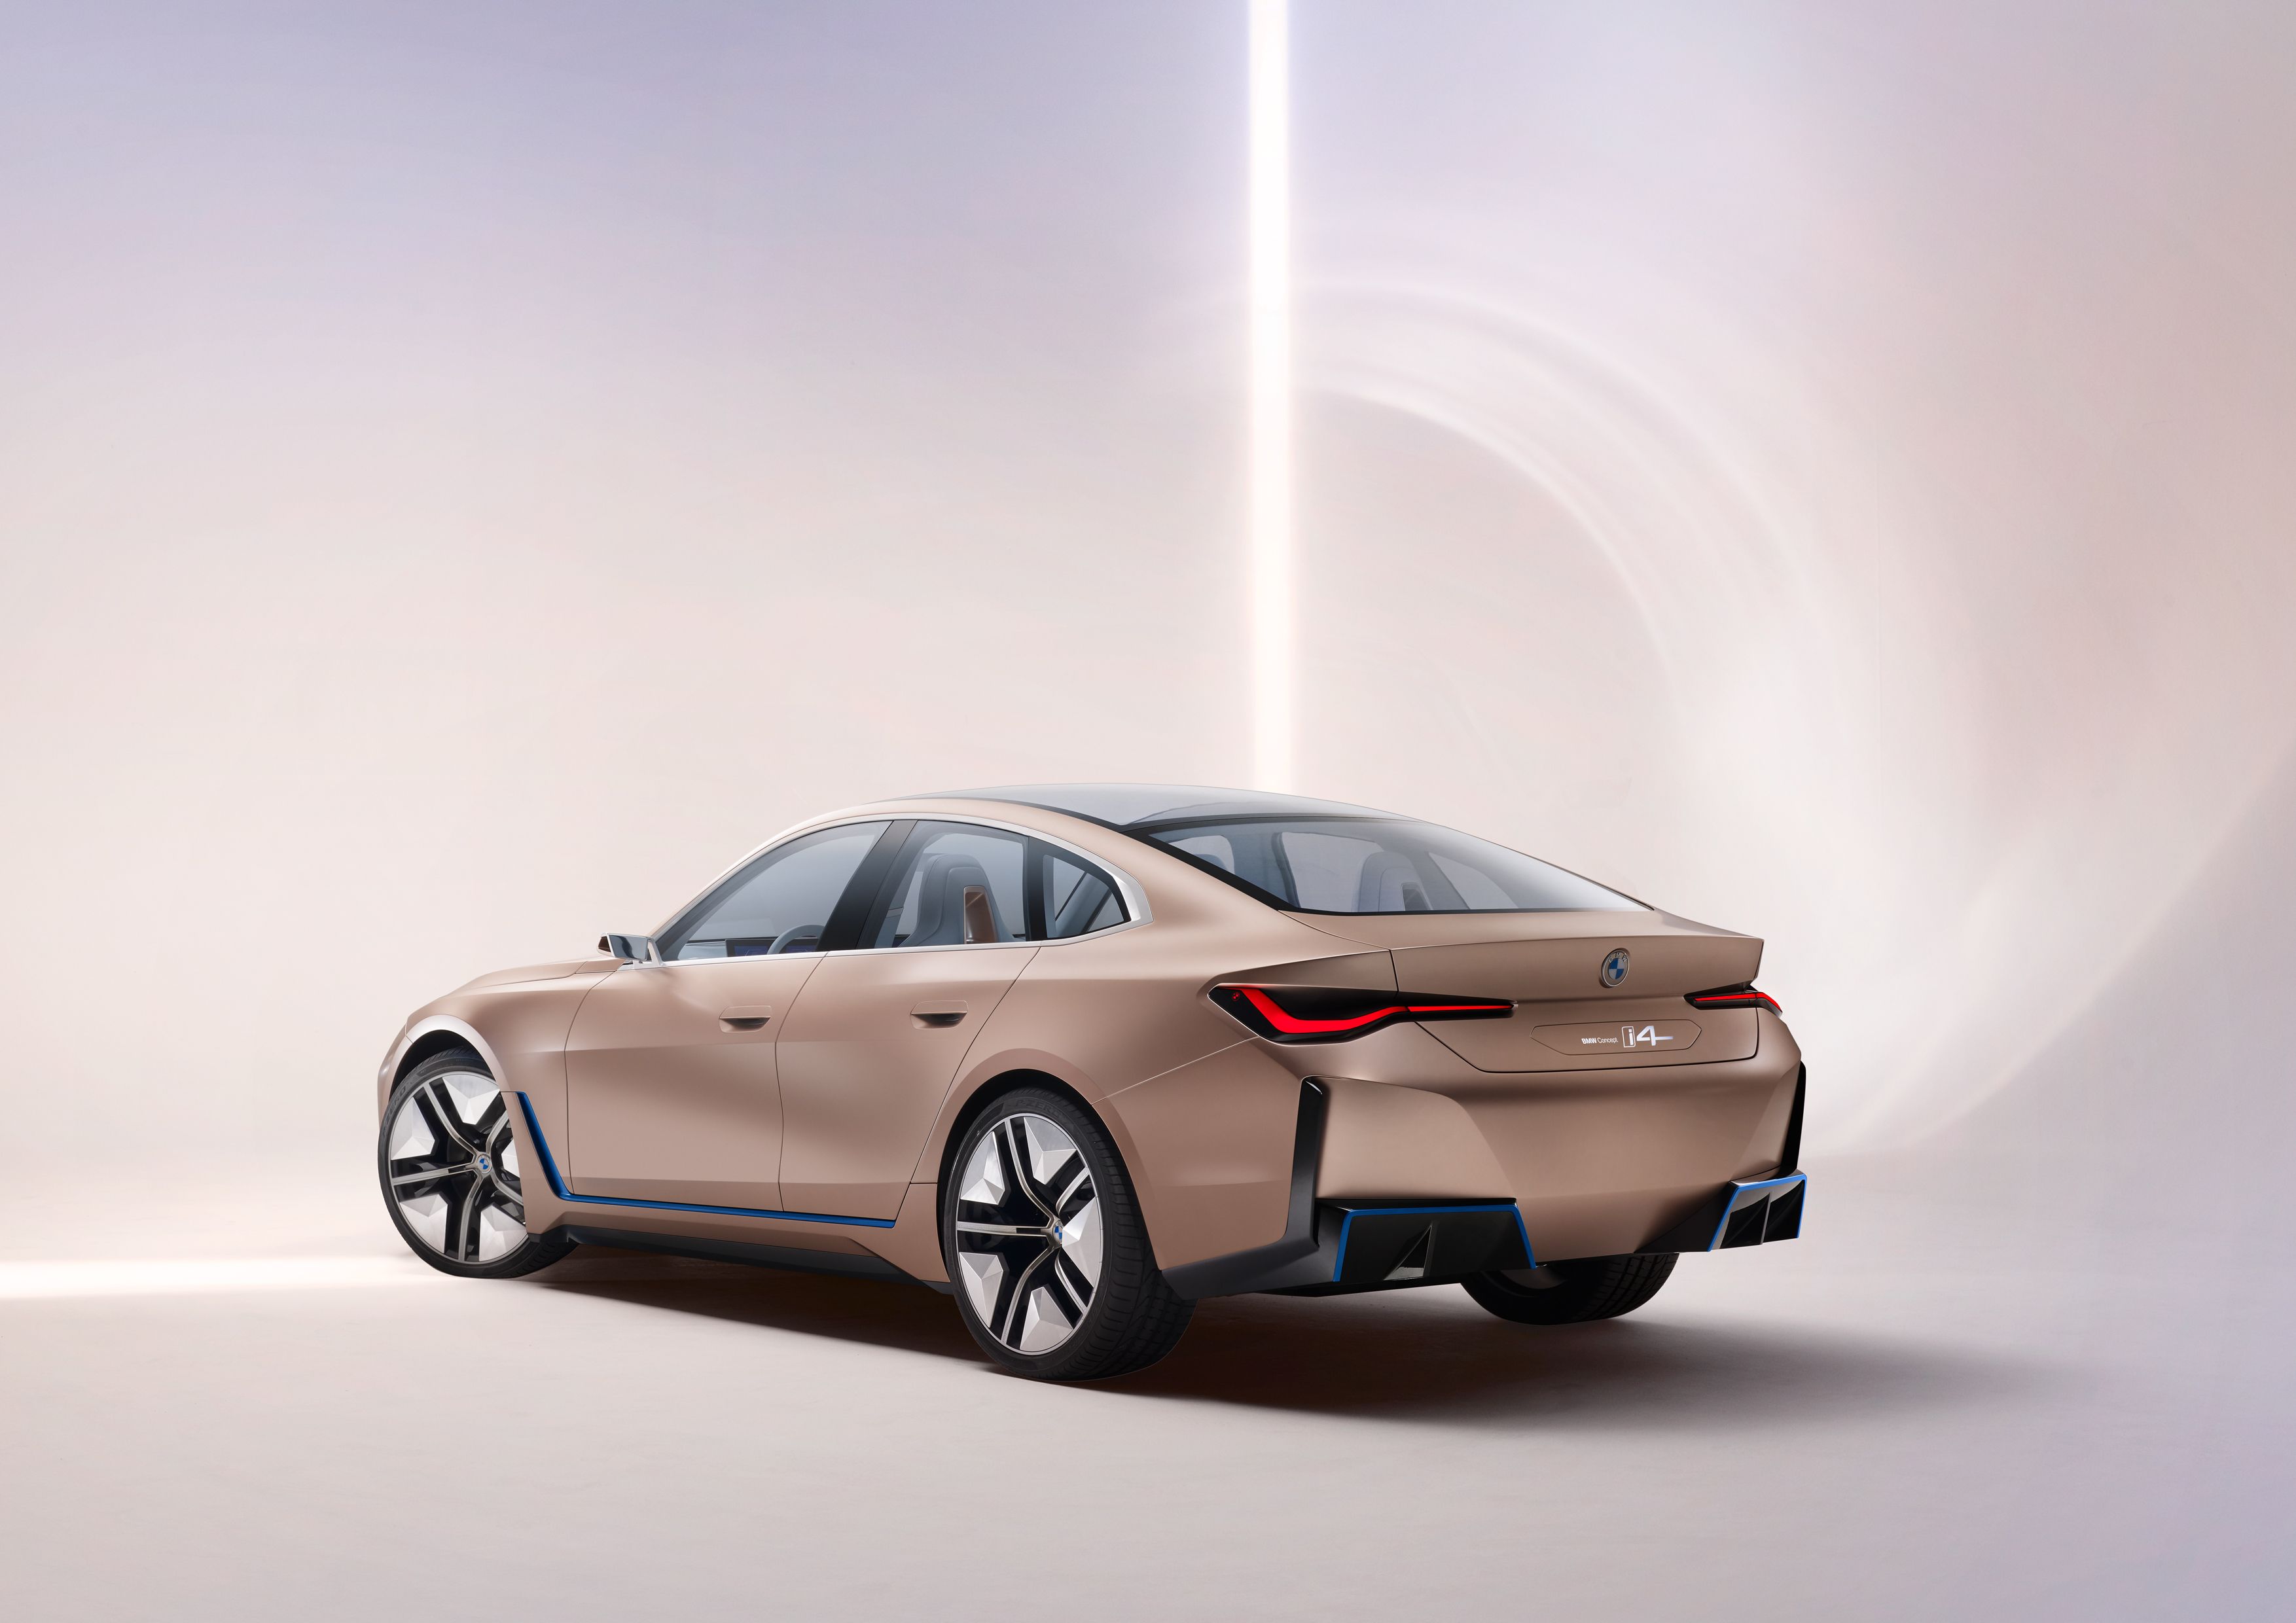 2020 BMW Concept i4